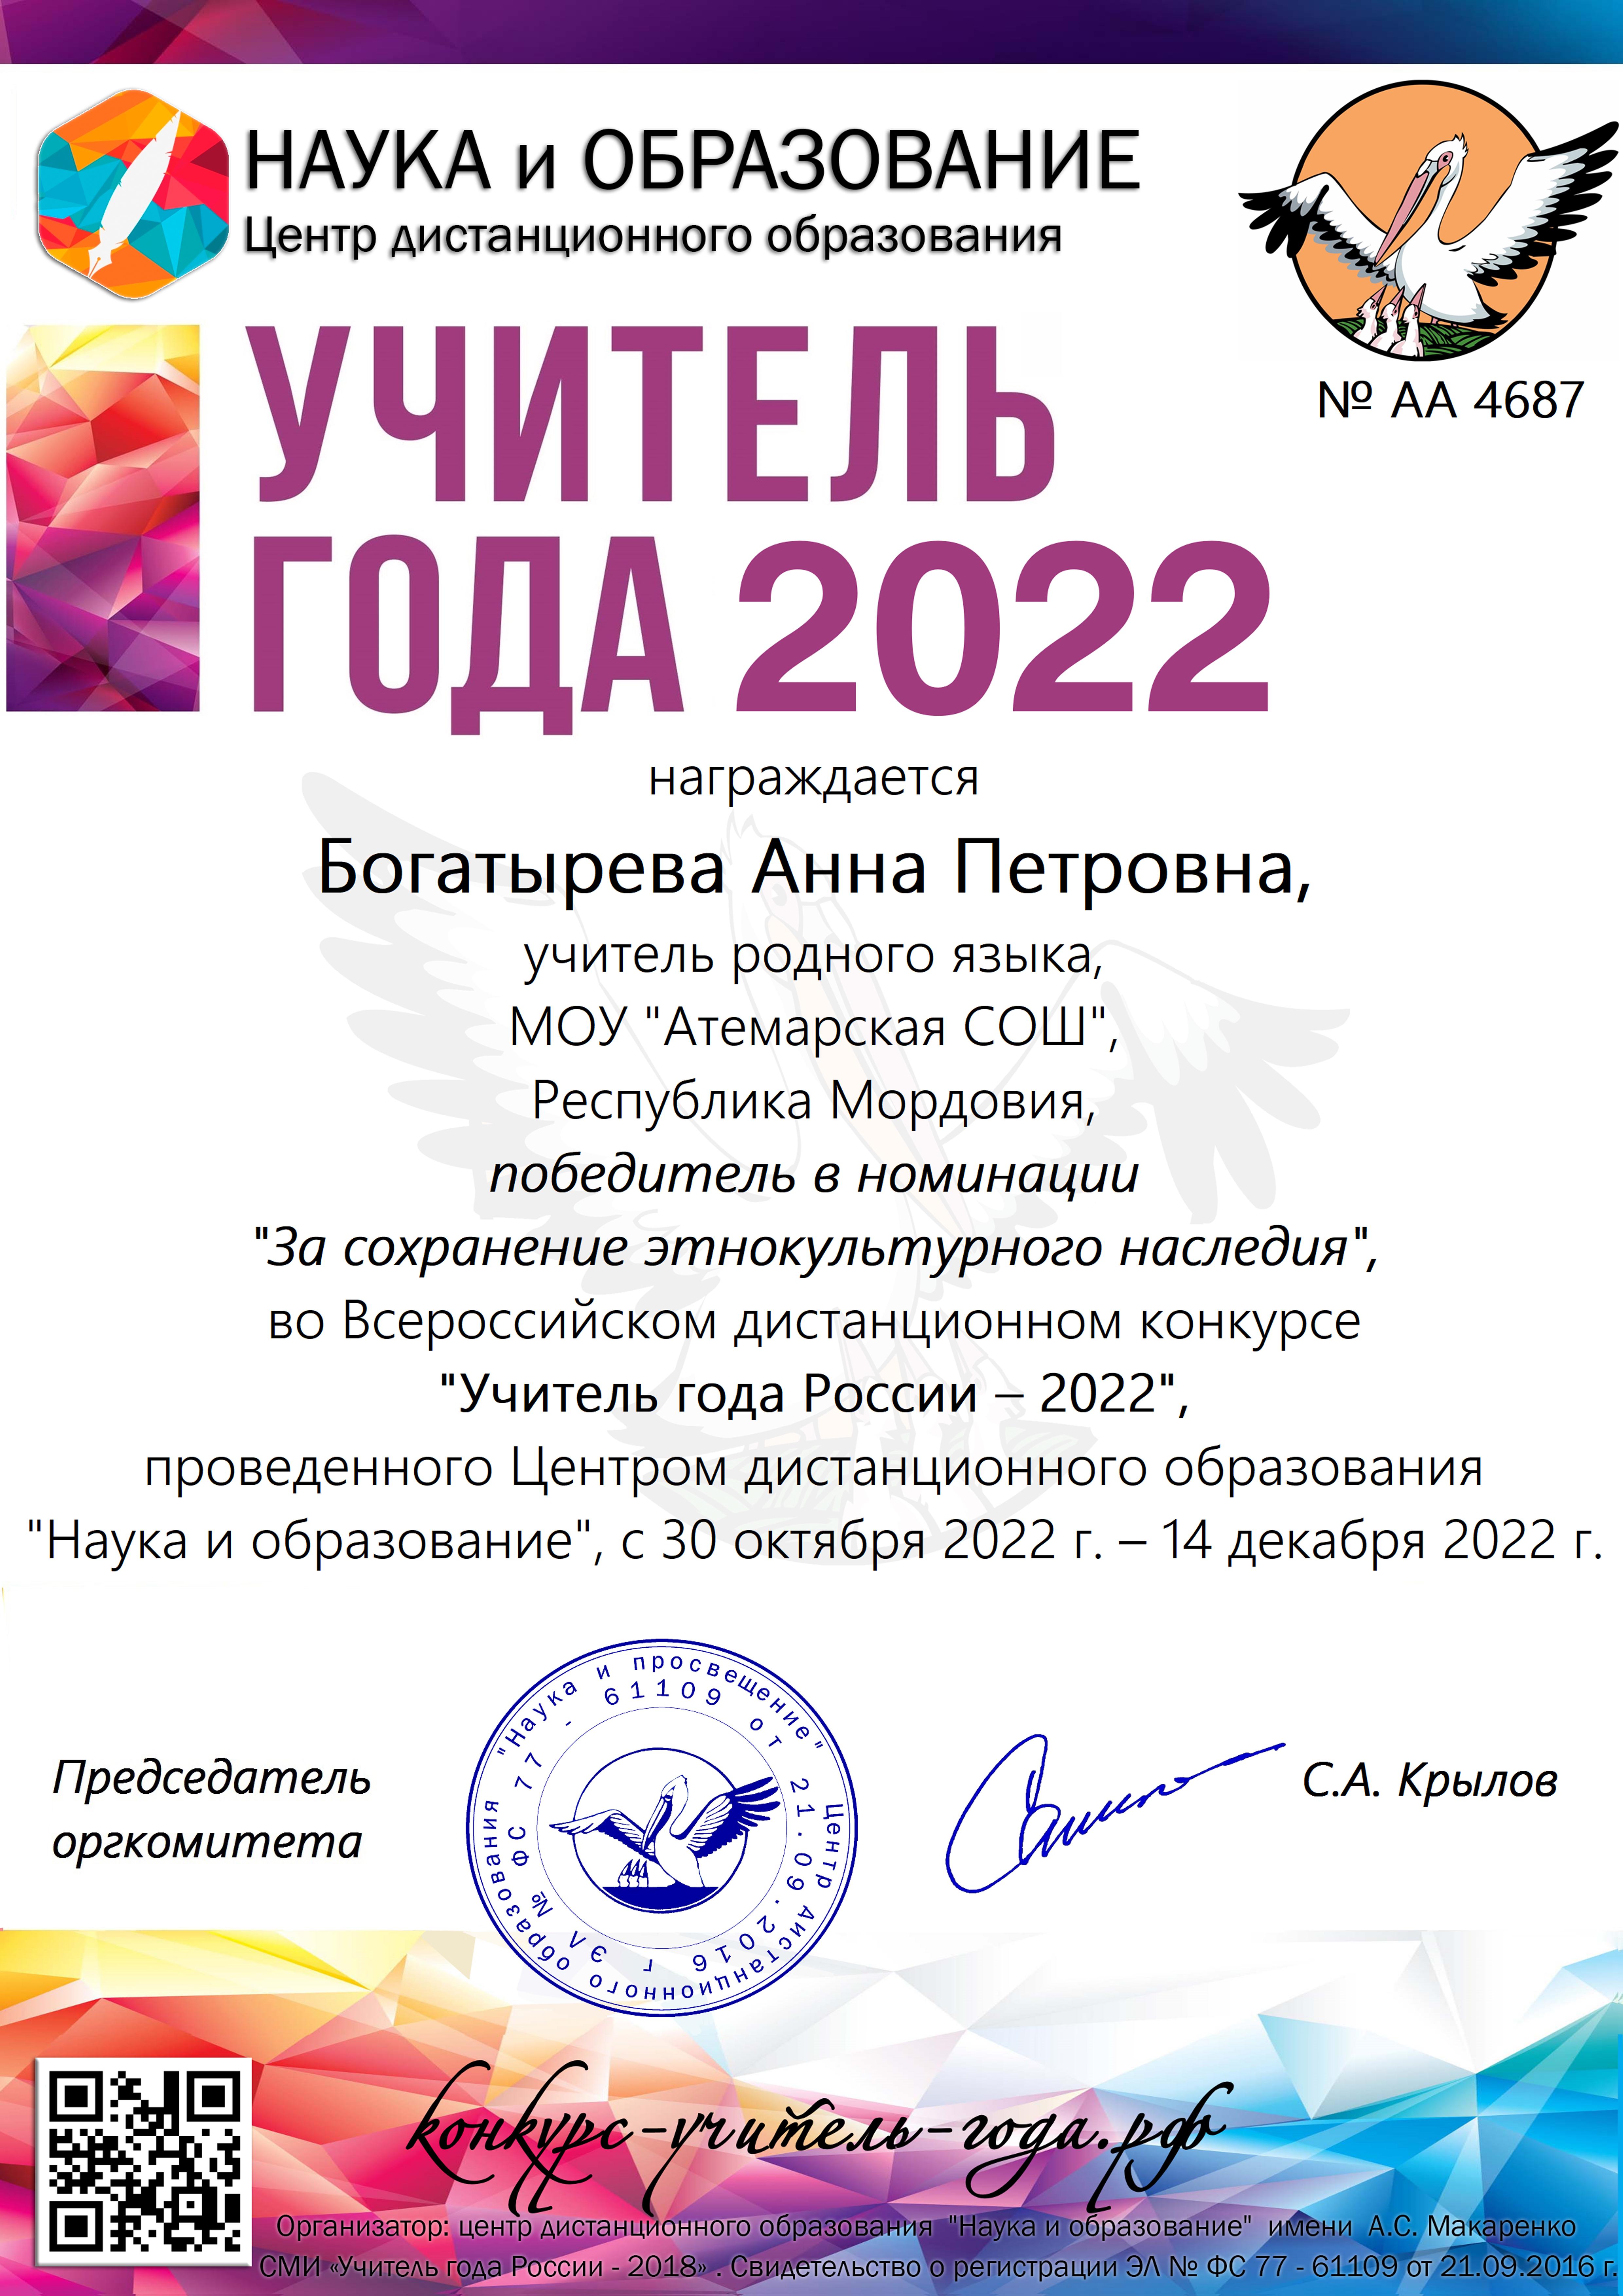 Всероссийский конкурс &amp;quot;Учитель года России - 2022&amp;quot;.